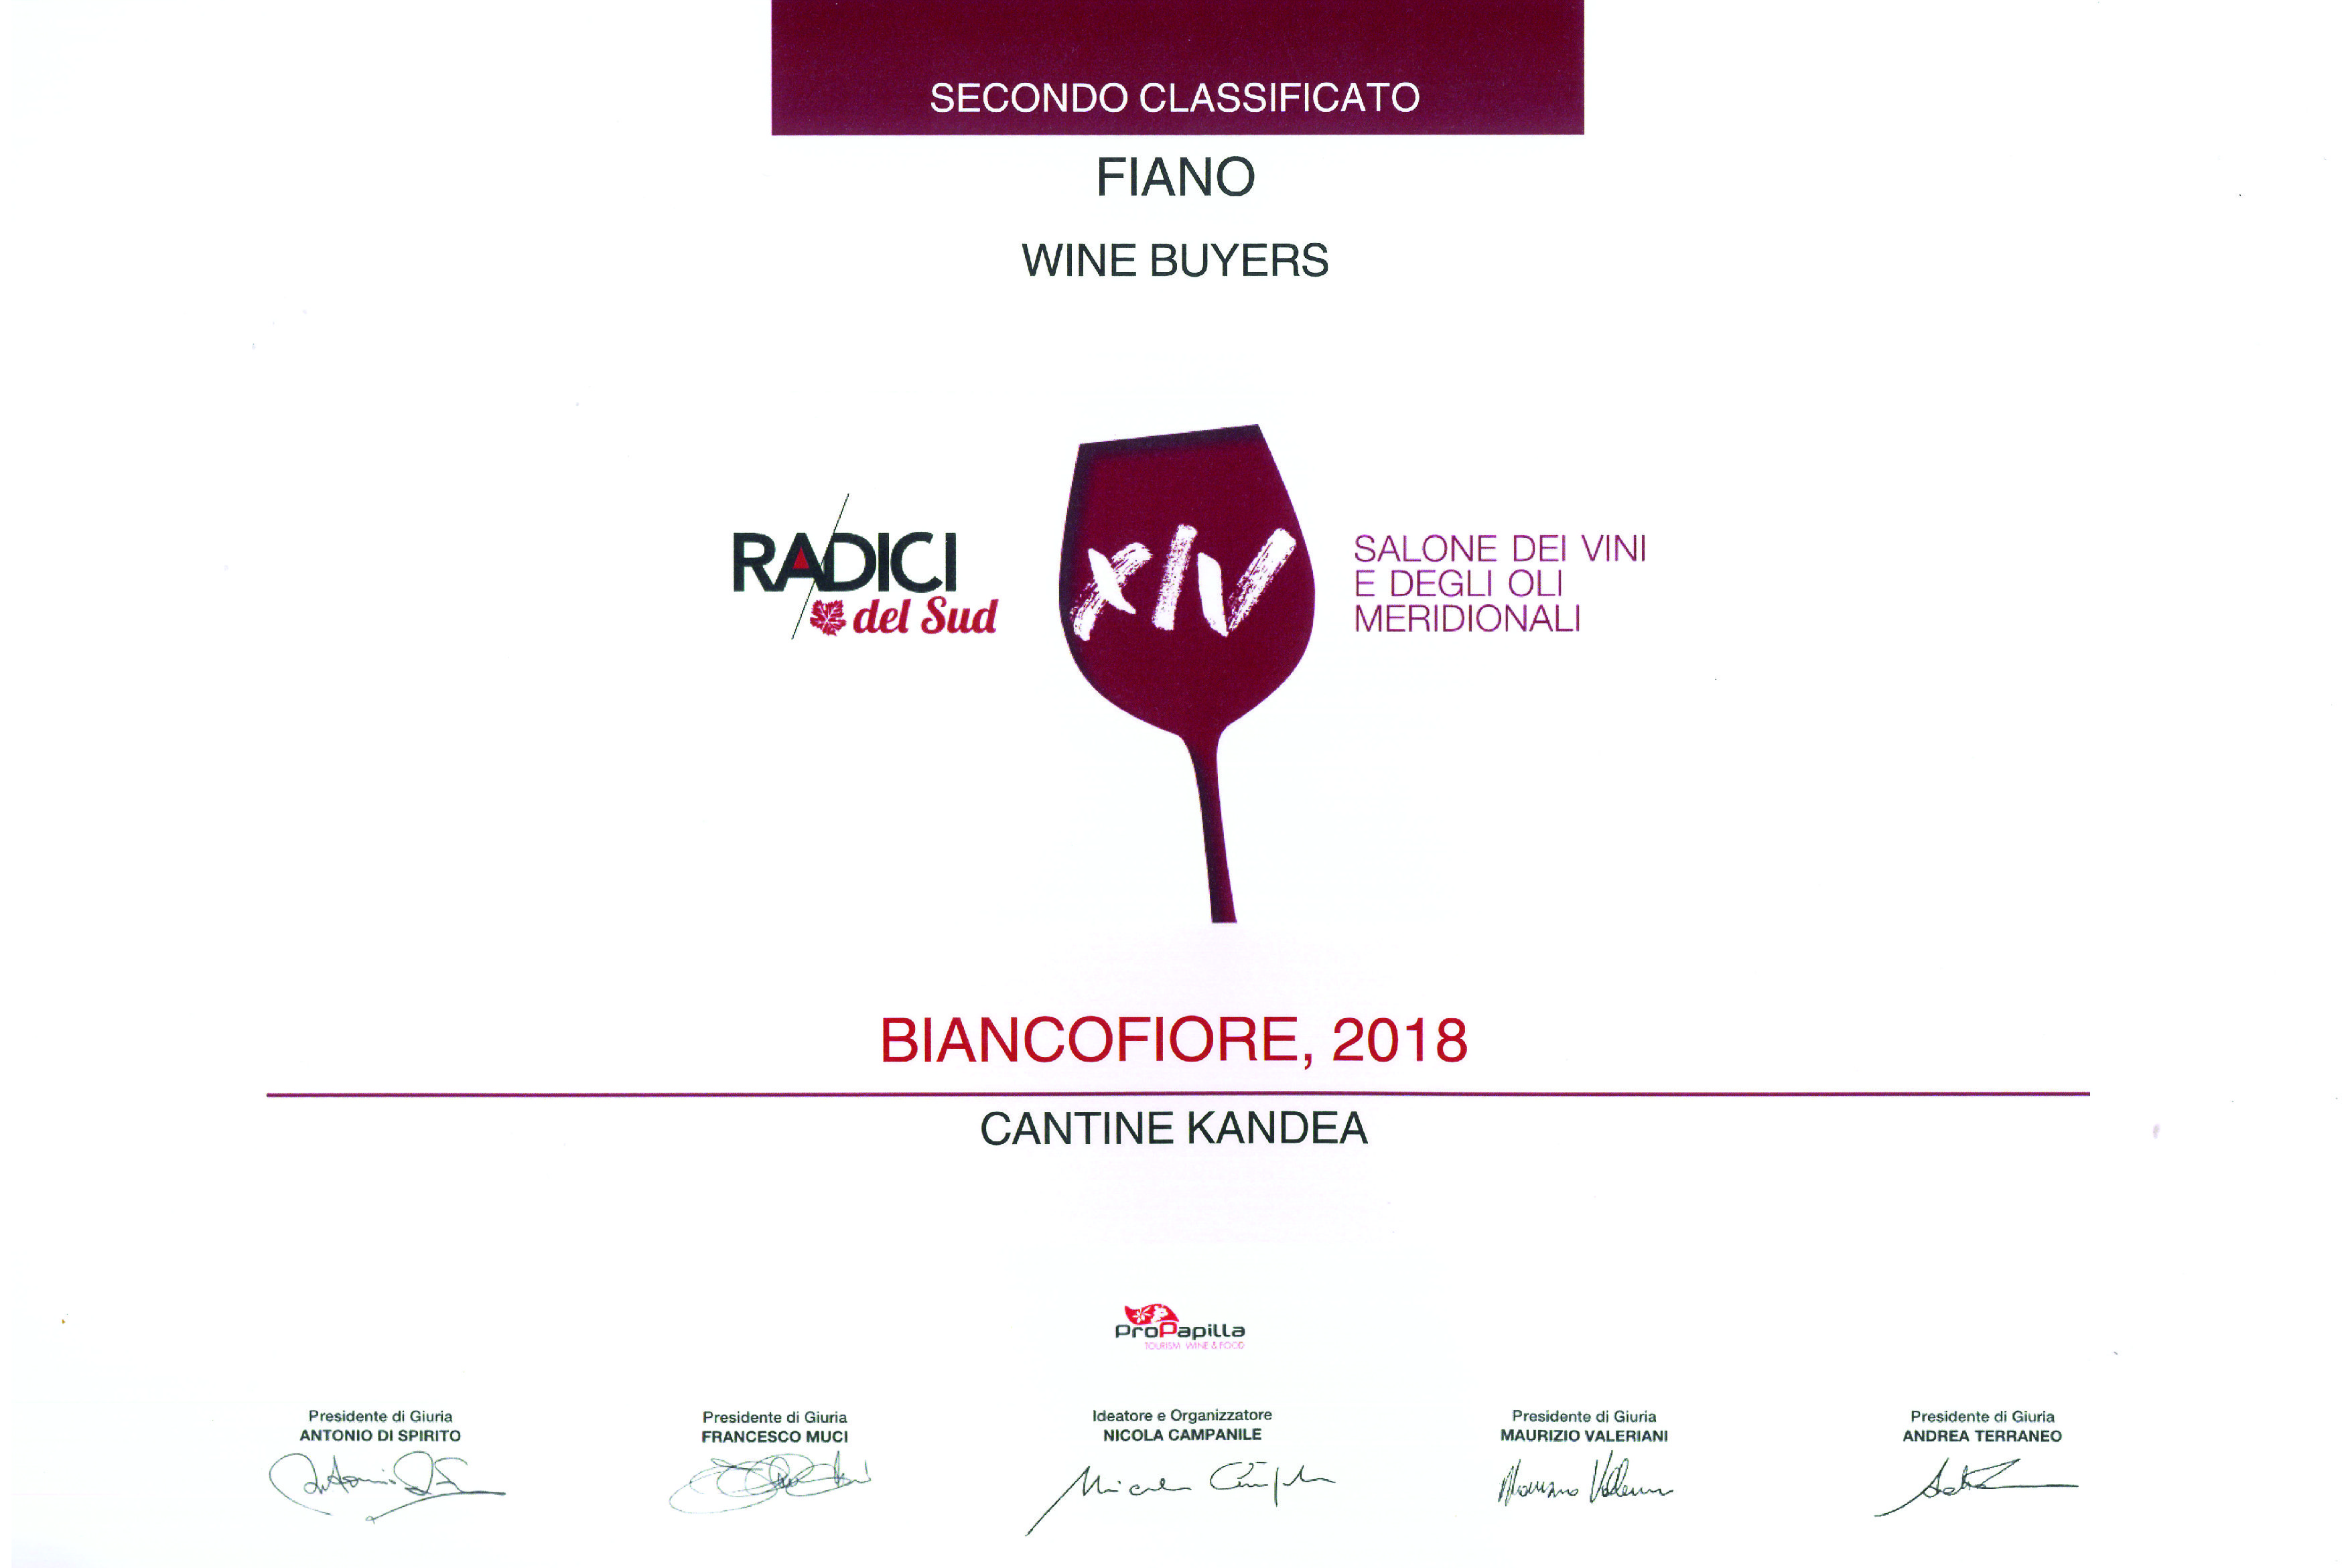 BIANCOFIORE 2018 - 2° vino premiato RADICI 2019